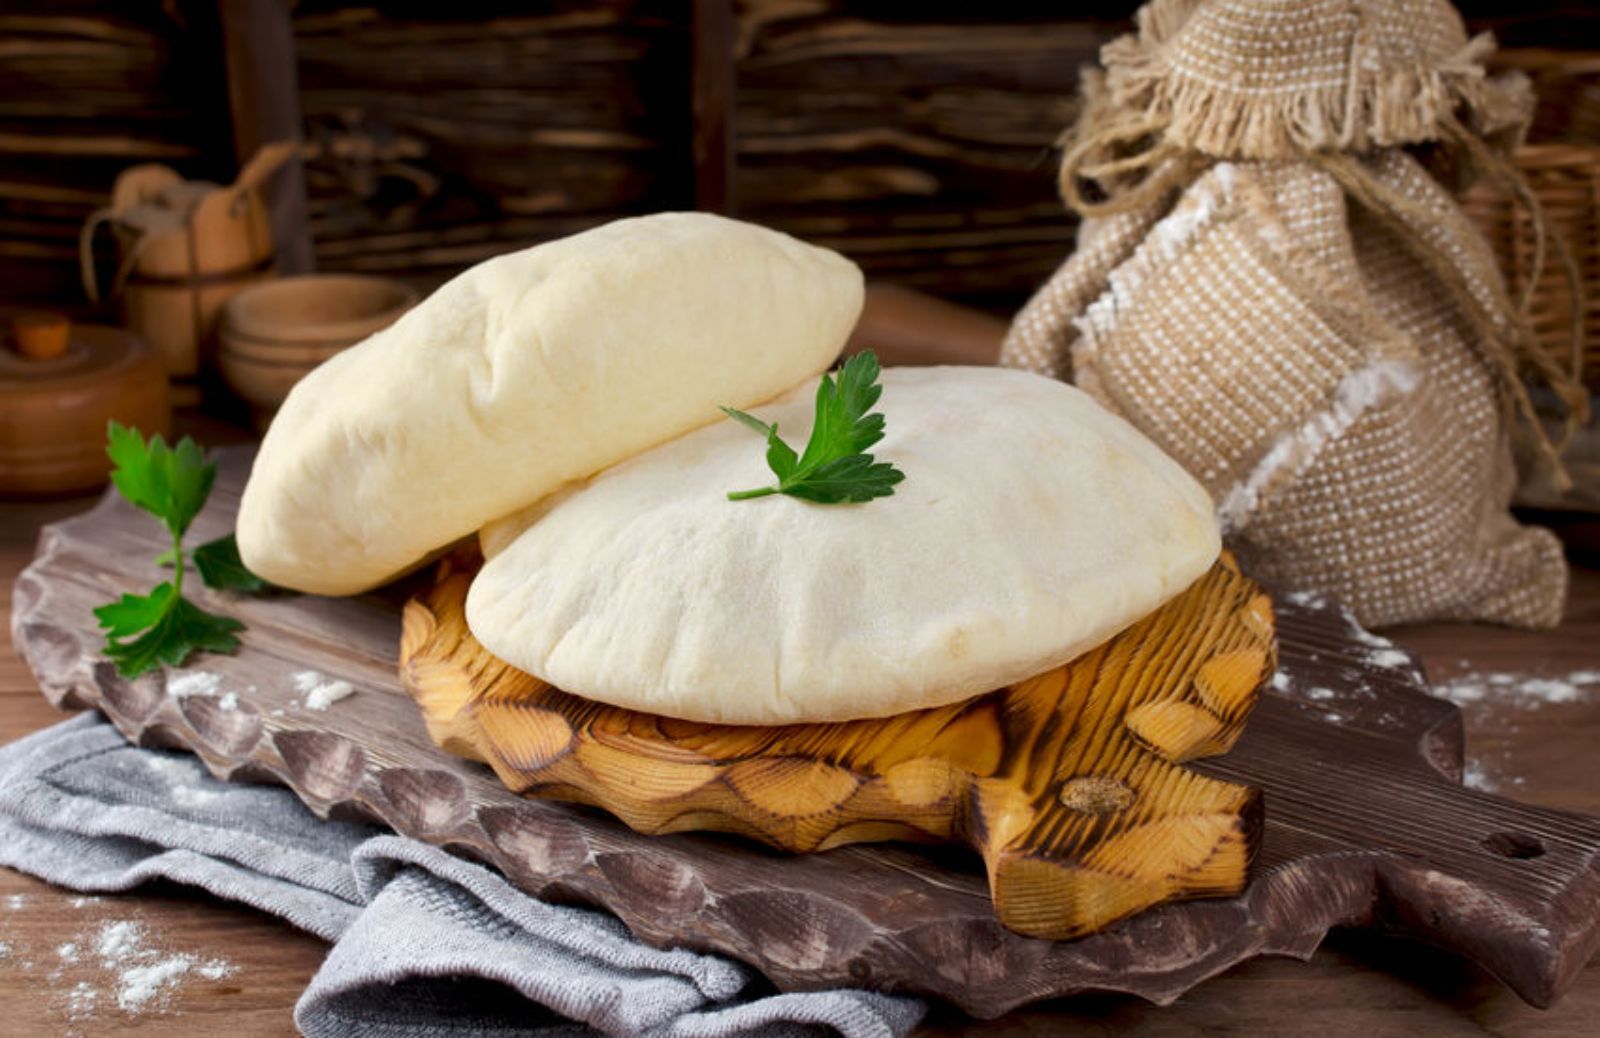 Pane arabo: la ricetta facile e veloce